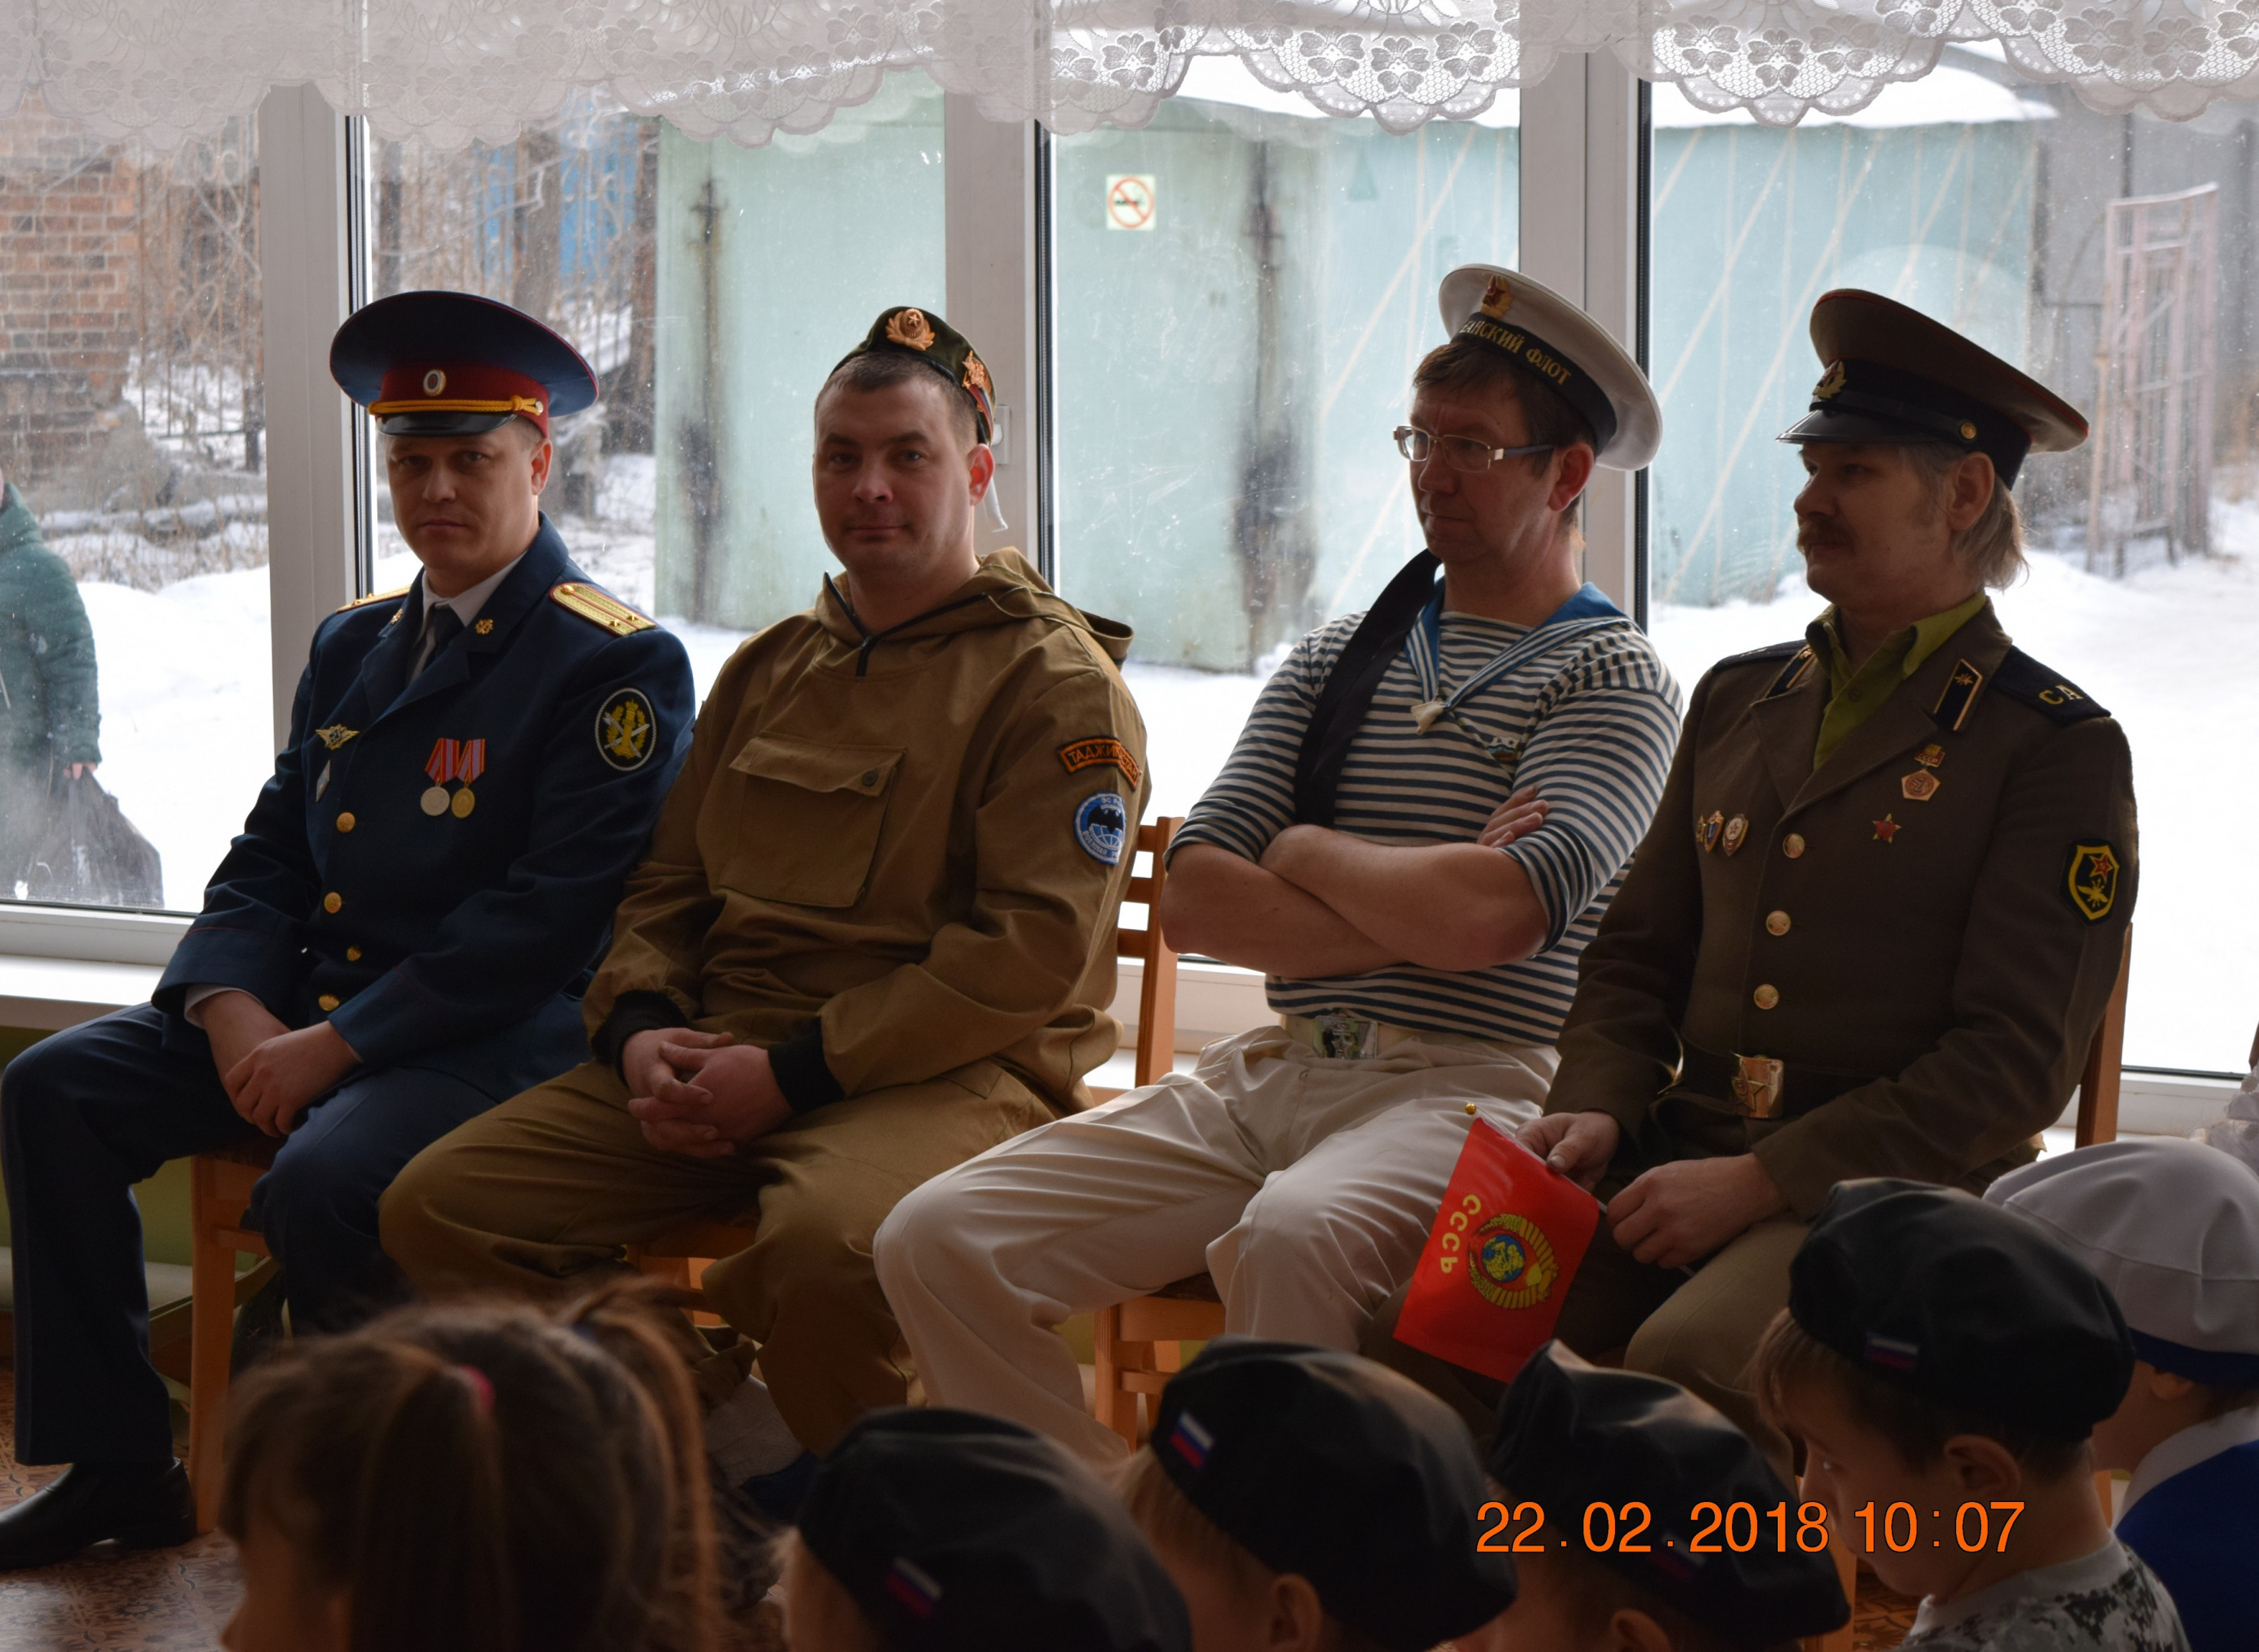  Сотрудники СИЗО-2 посетили «Ирбитскую школу» для детей с ограниченными возможностями здоровья